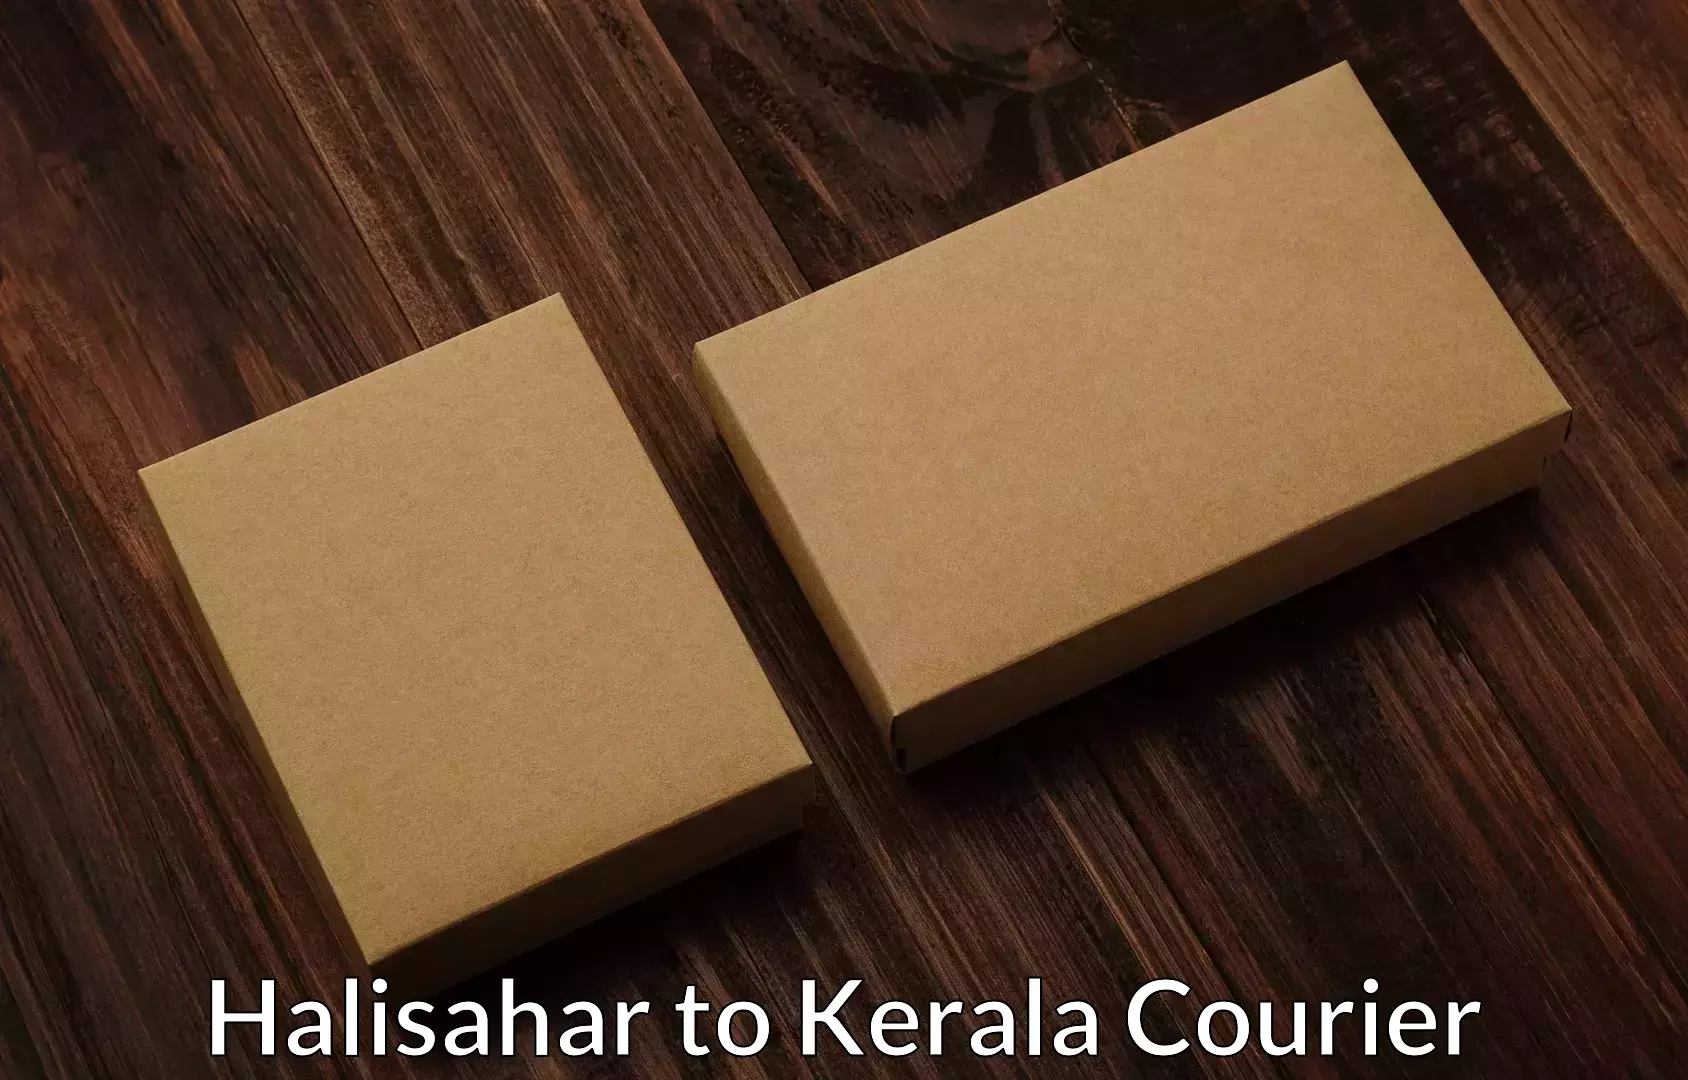 Moving and packing experts Halisahar to Thiruvananthapuram